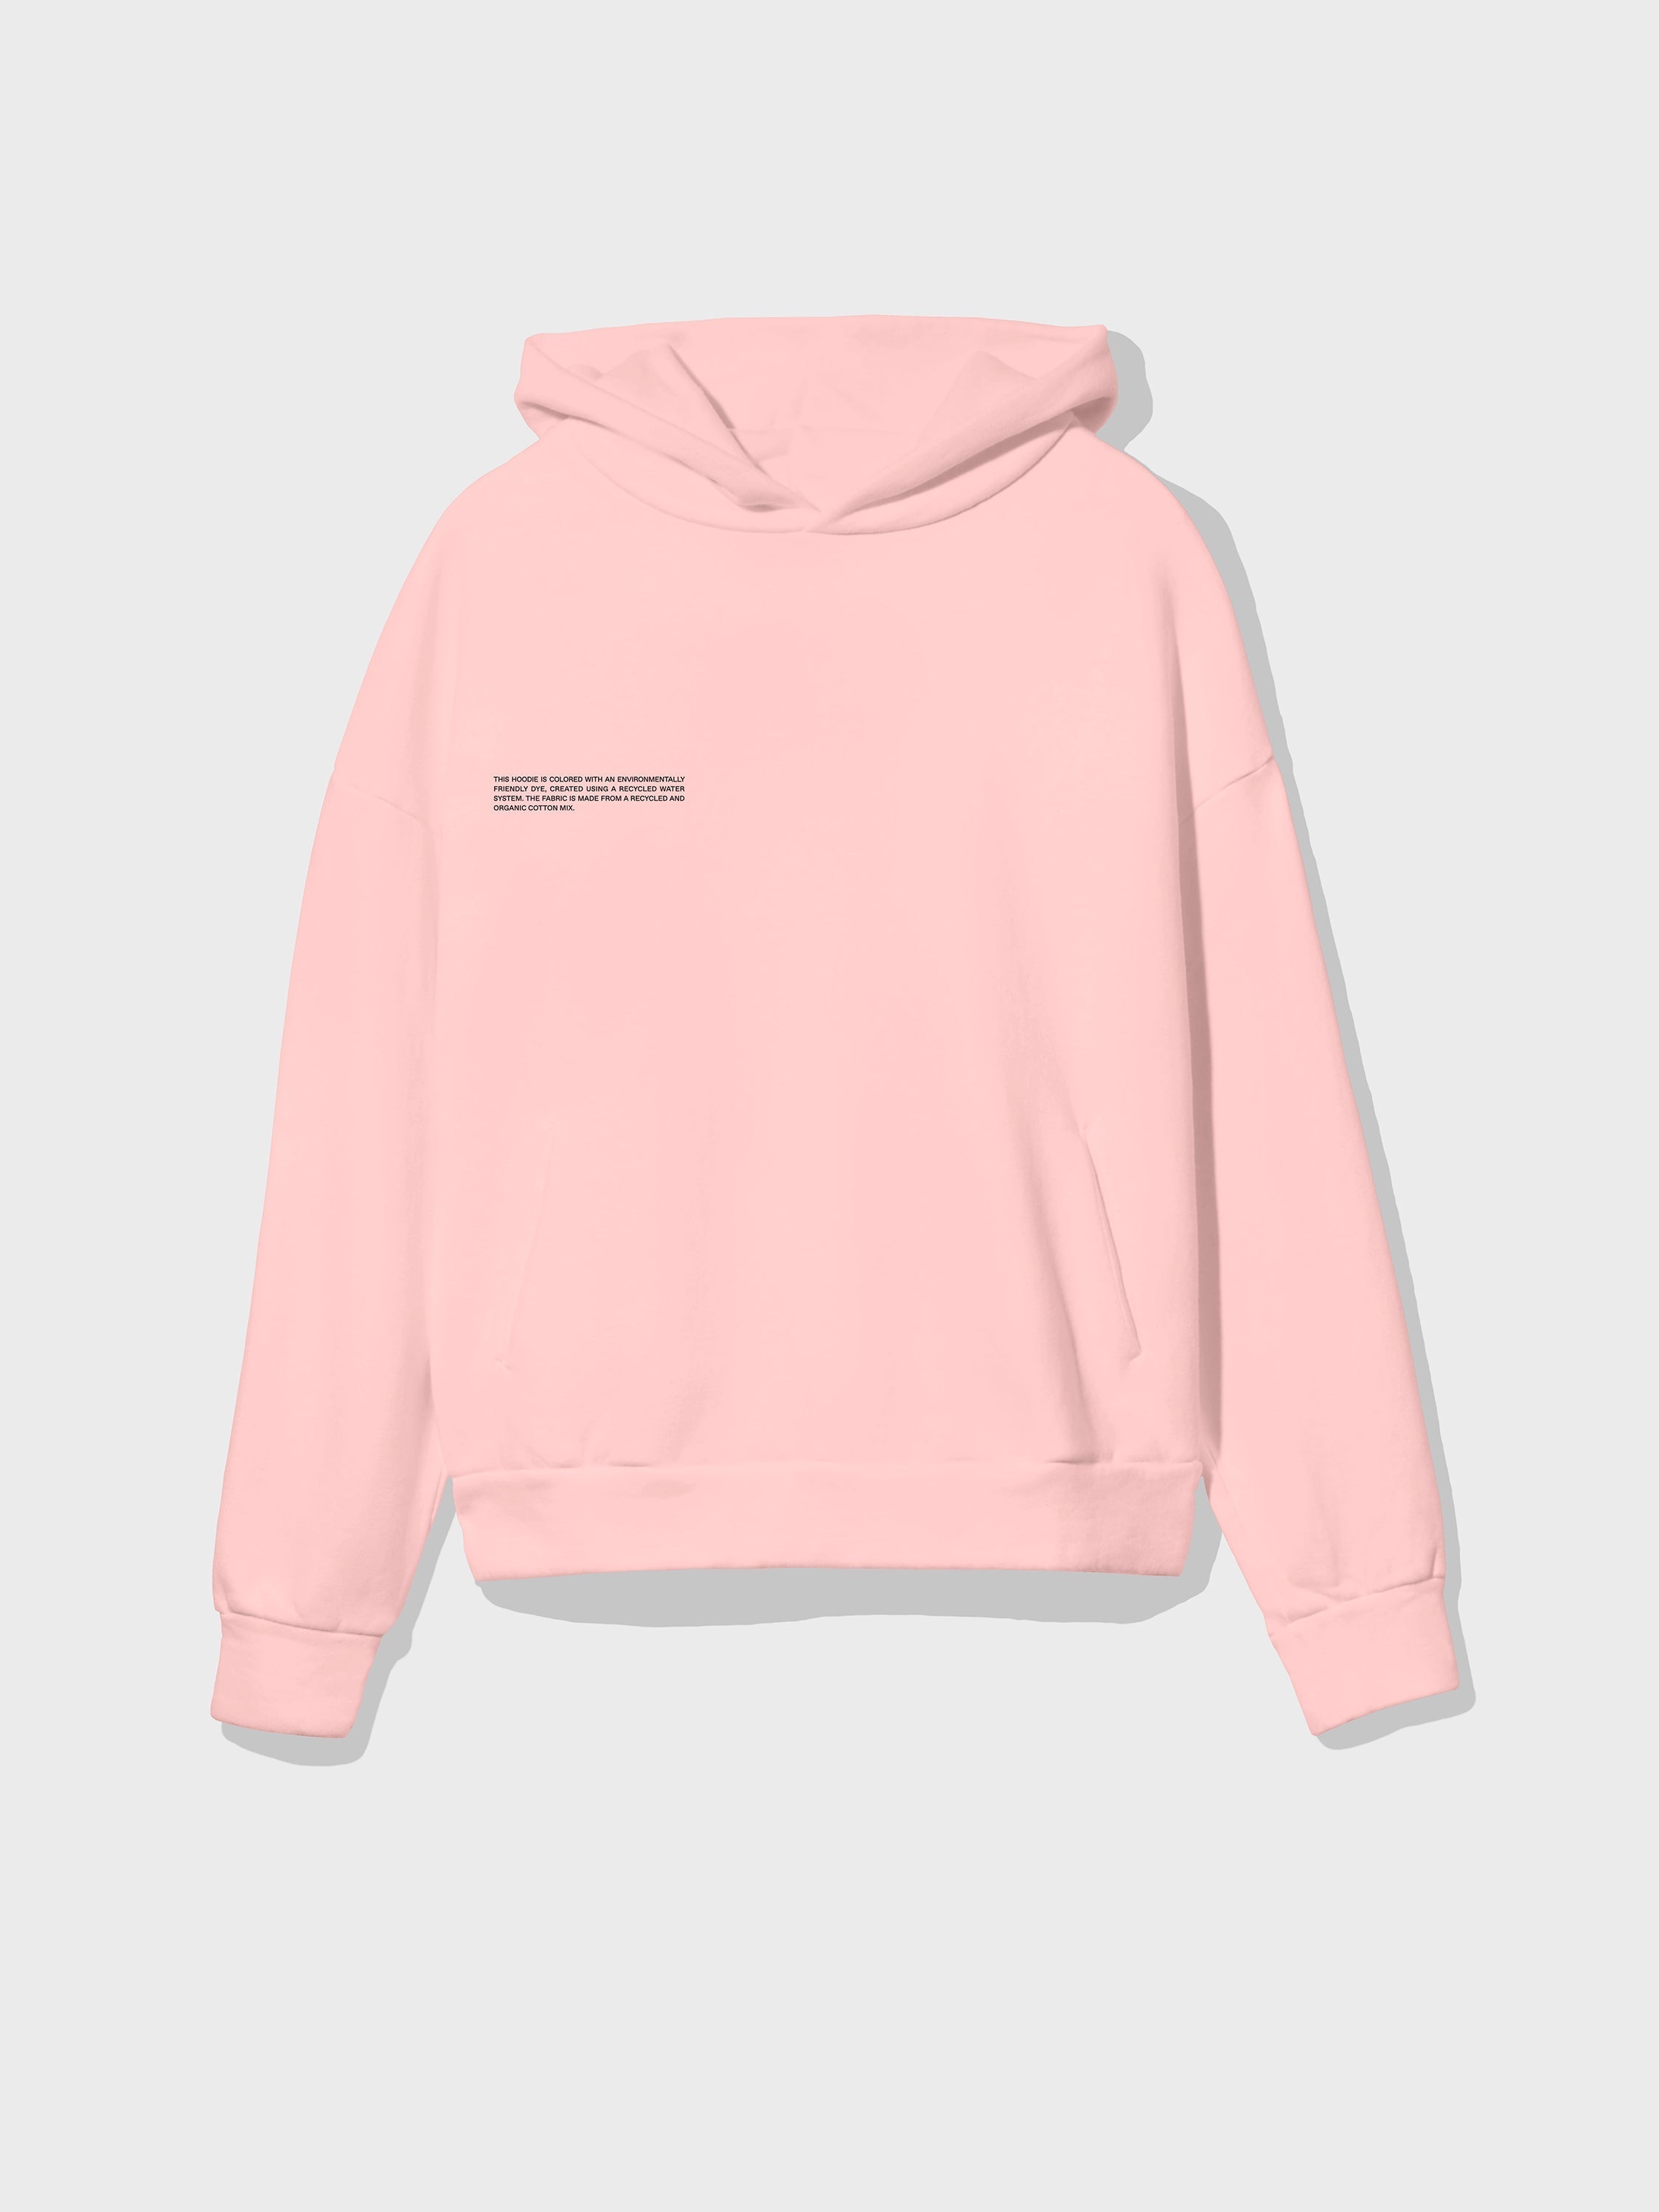 rose colored hoodie